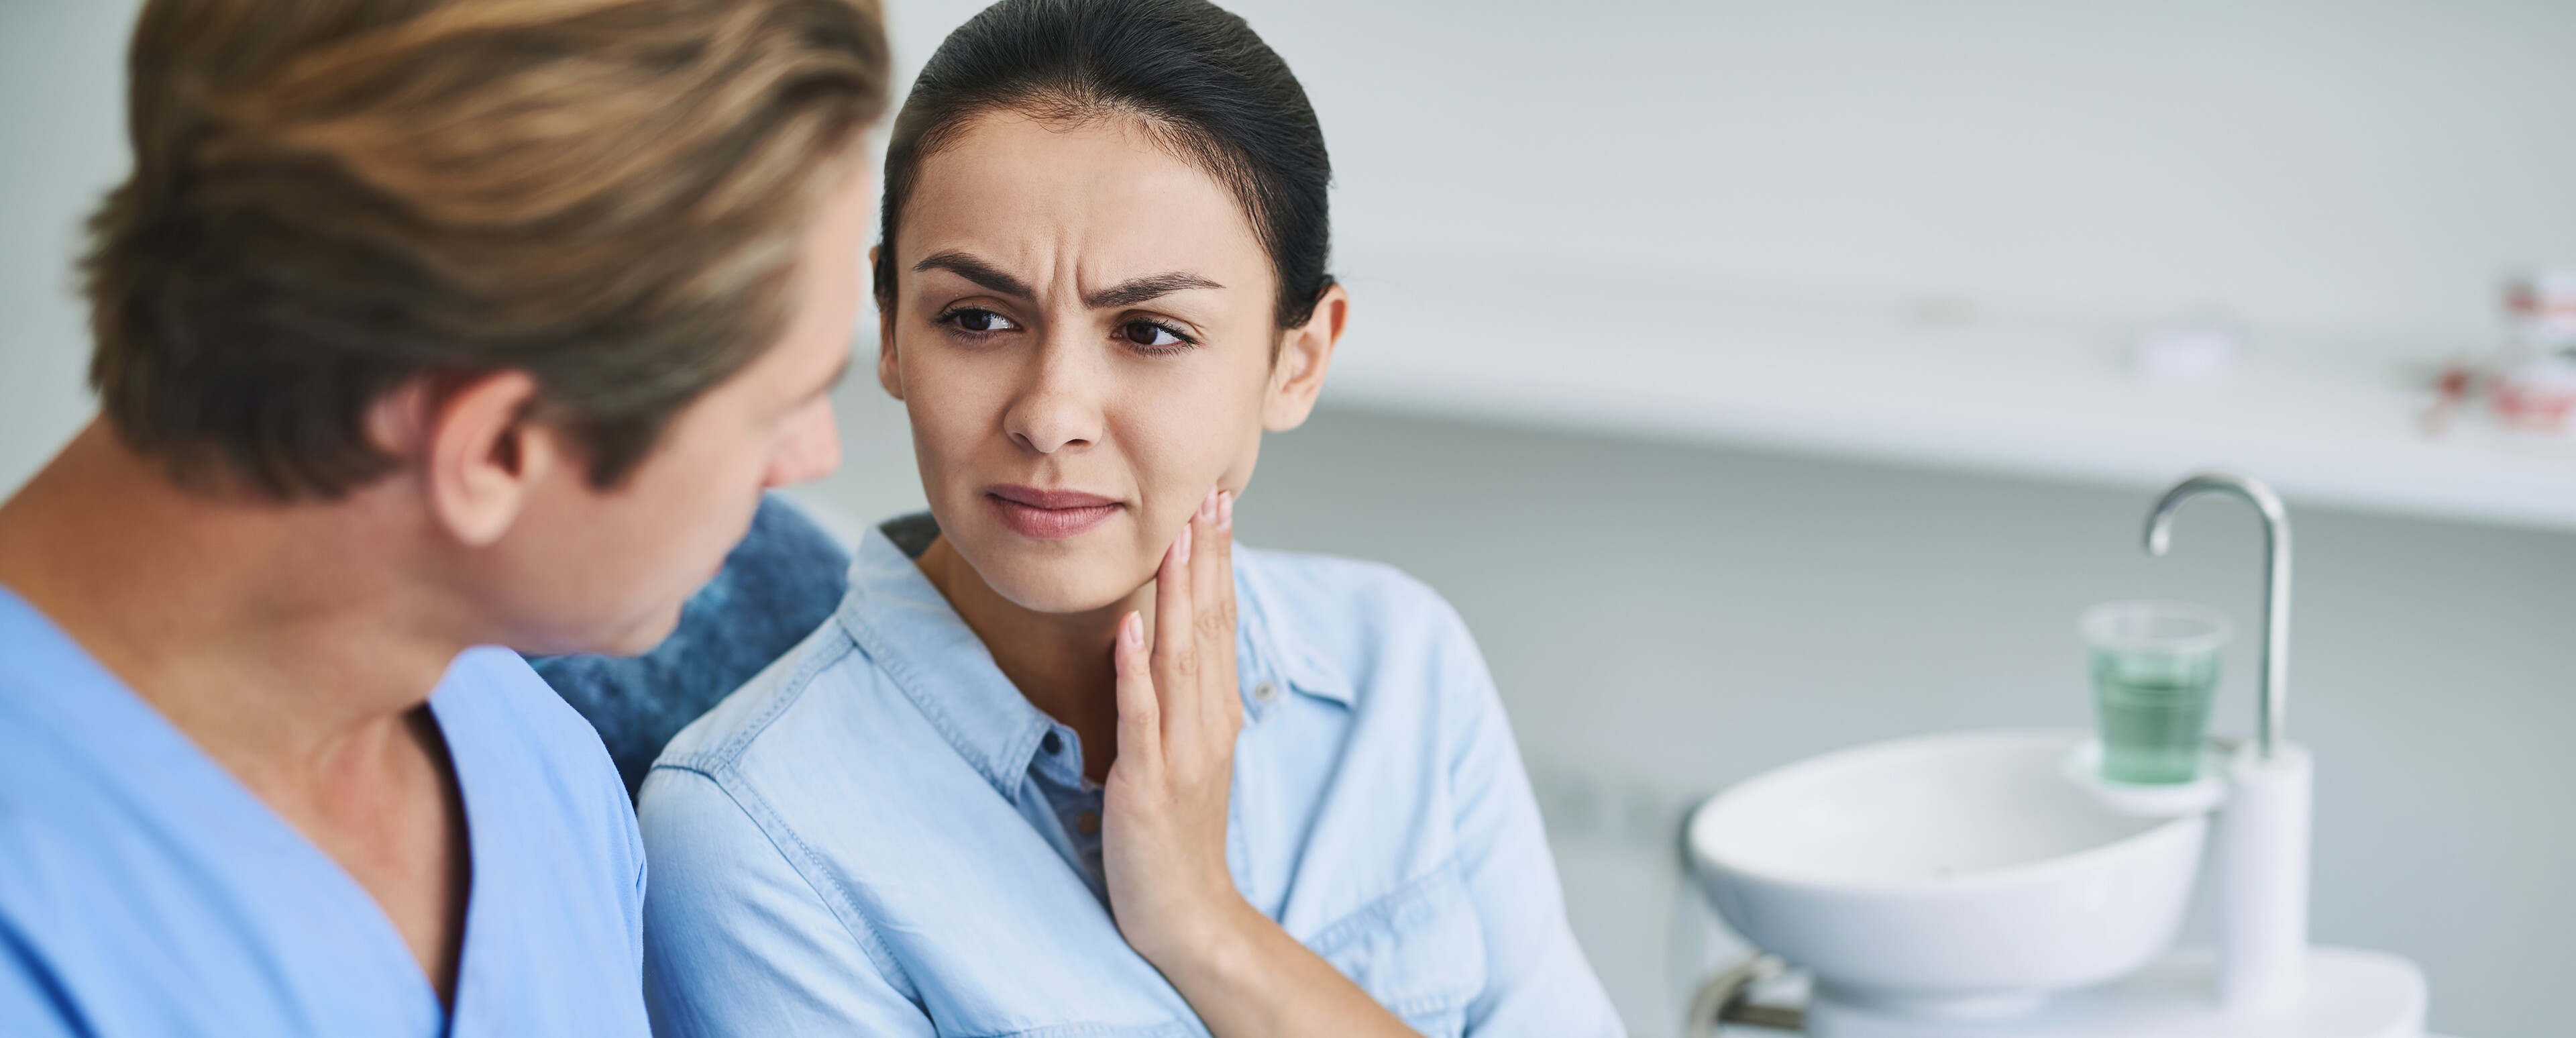 Patientin hält sich wegen Kieferschmerzen mit einer Hand die Wange während sie von einem Zahnarzt beraten wird